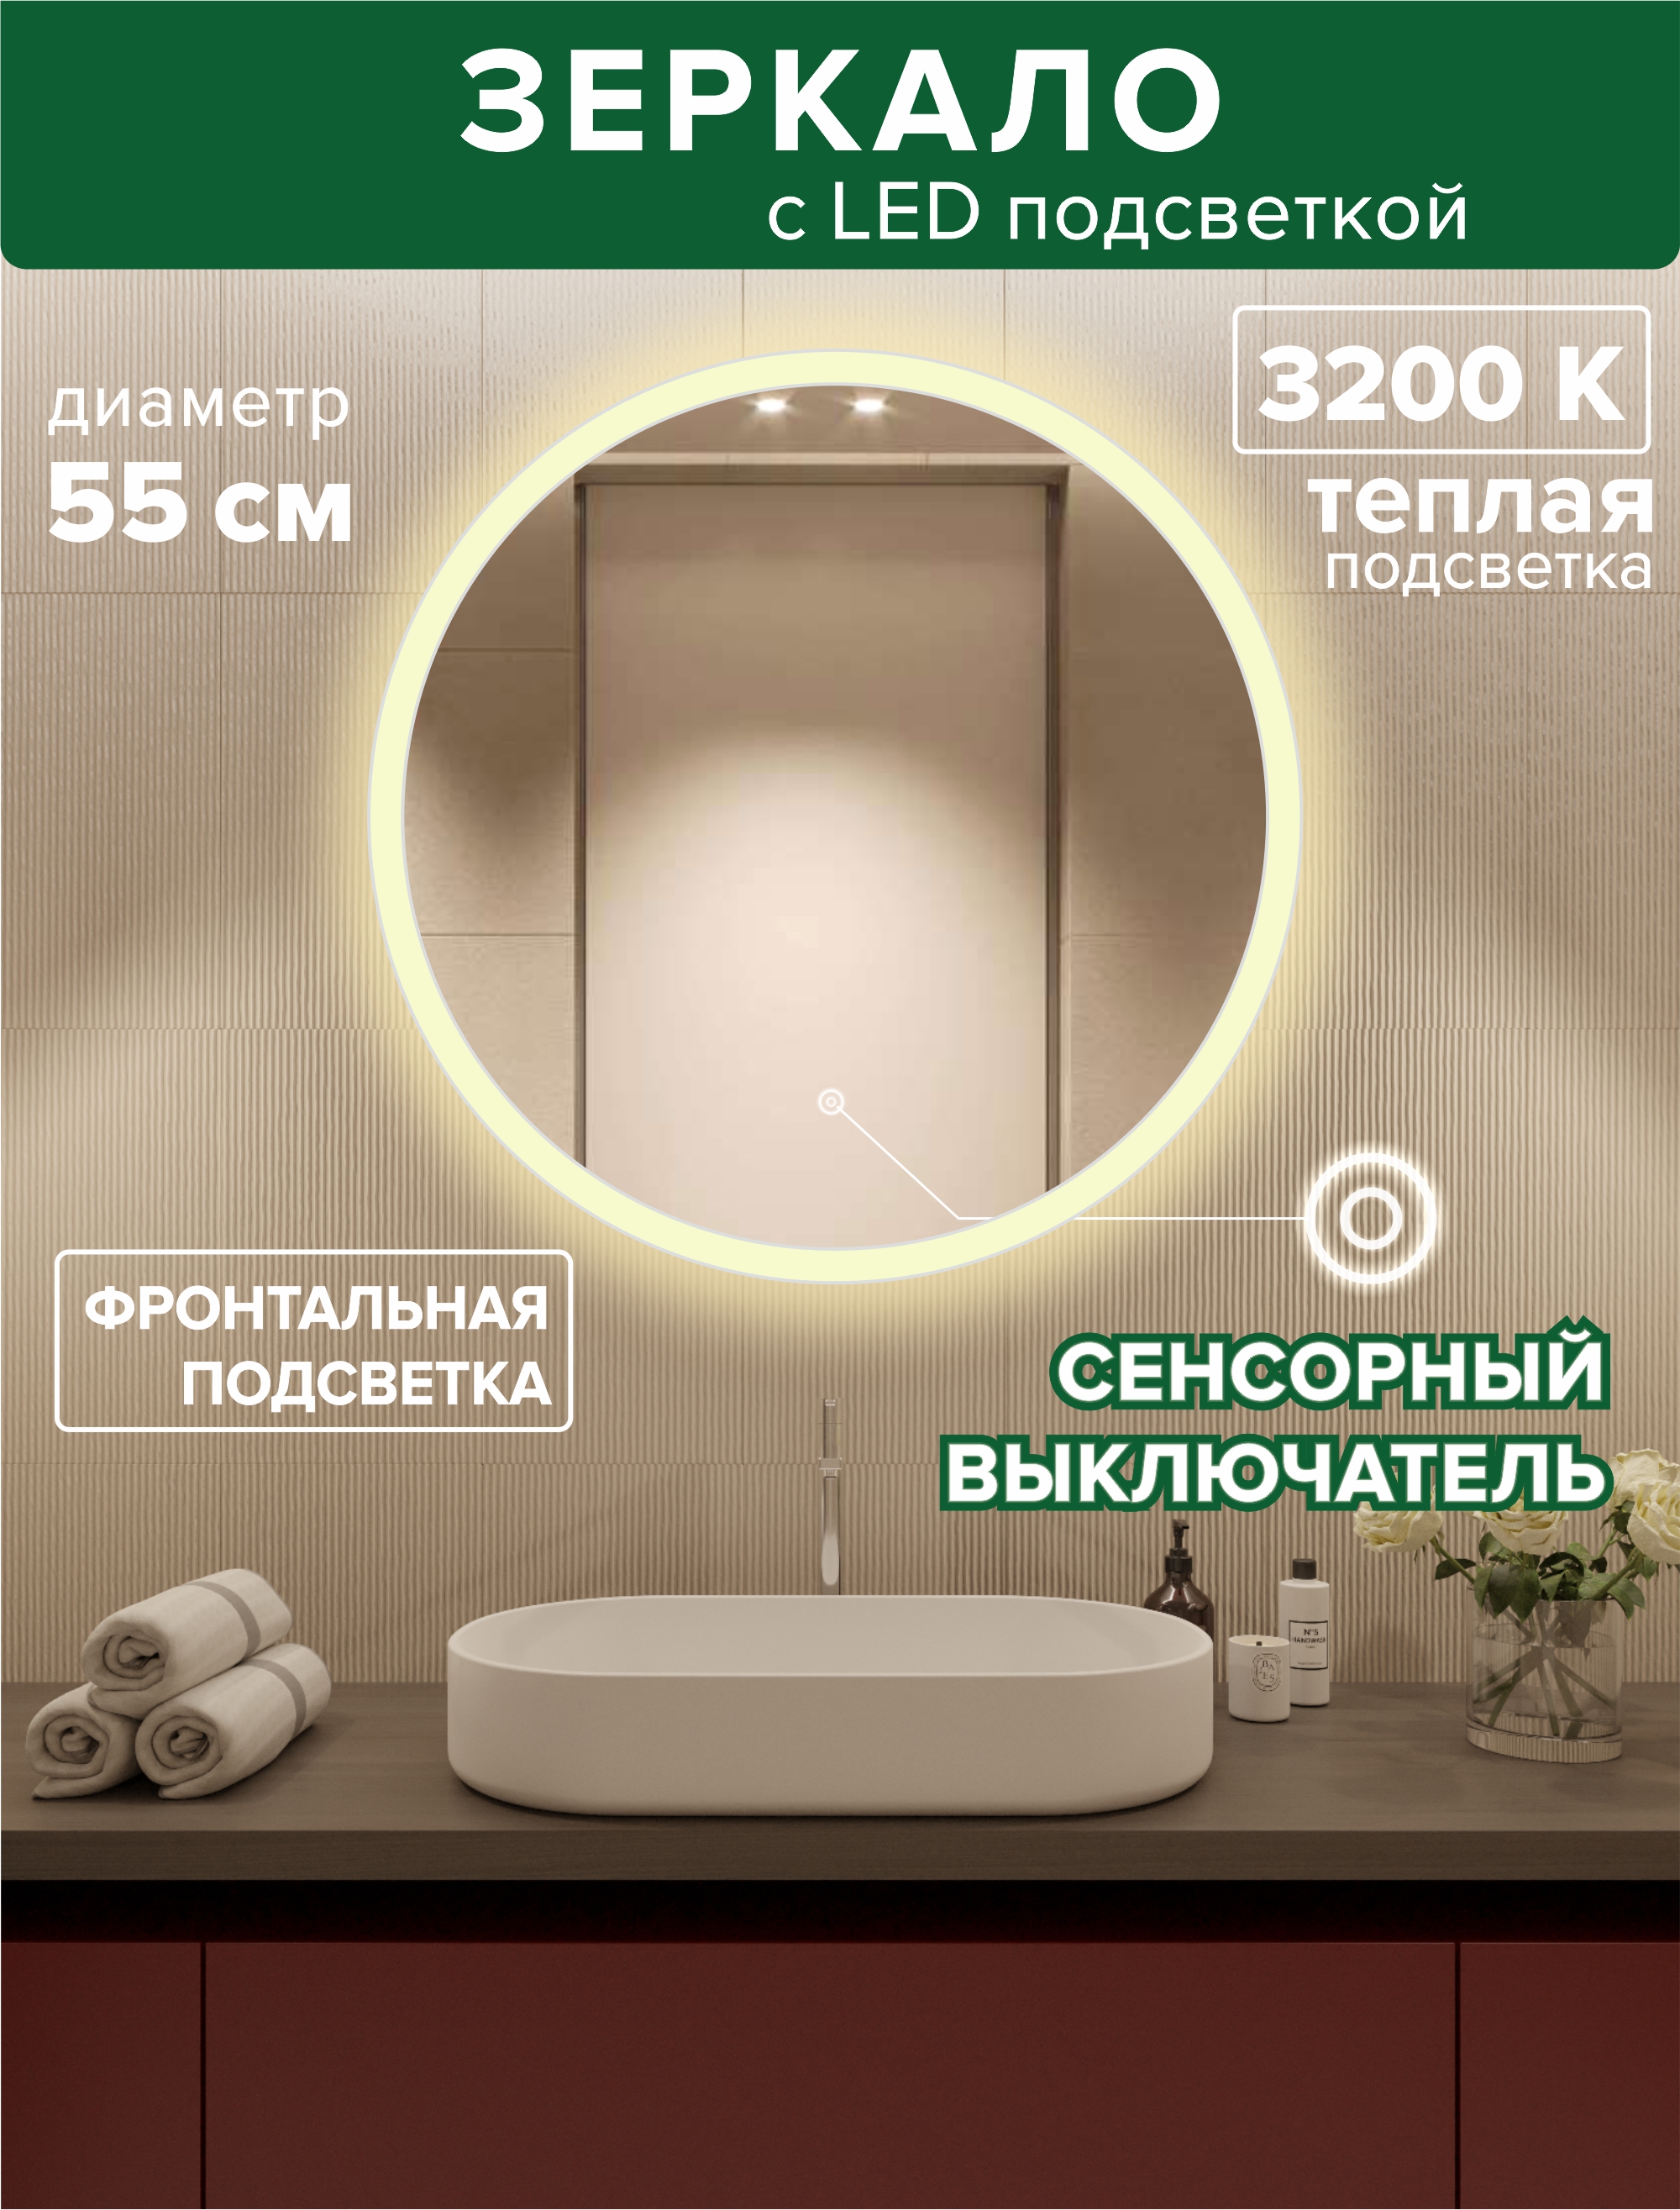 Зеркало для ванной Alfa Mirrors MSvet-55t фронтальная теплая подсветка 3200К, круглое 55см зеркало для ванной alfa mirrors обогрев теплая подсветка 3200к овальное 40х90см an 49at